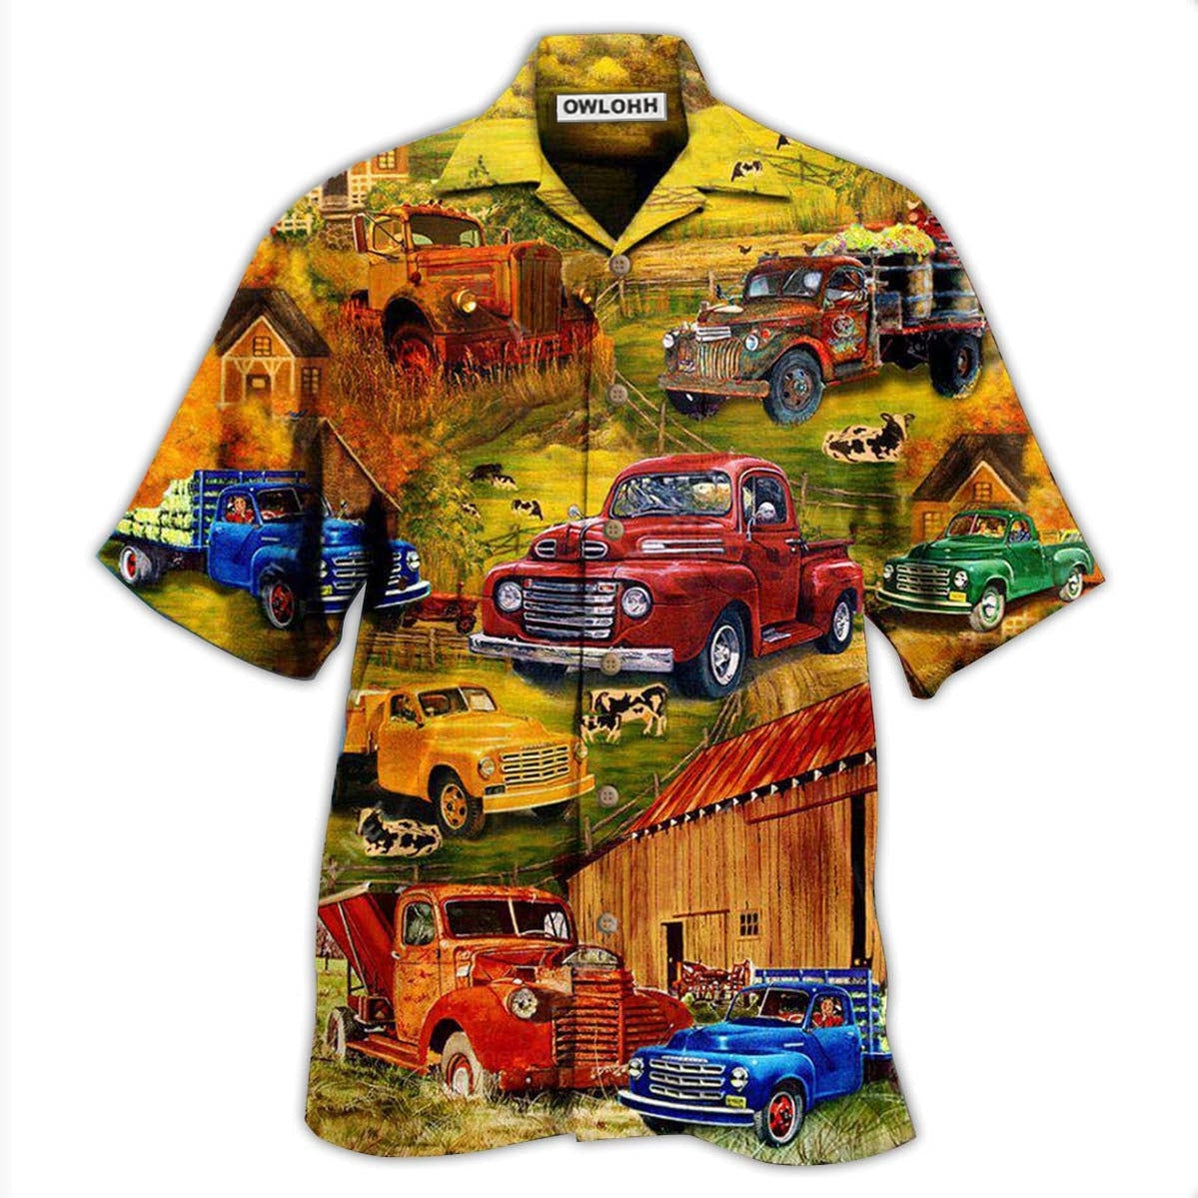 Hawaiian Shirt / Adults / S Truck Take Me On A Road Trip Pickup In The Village - Hawaiian Shirt - Owls Matrix LTD